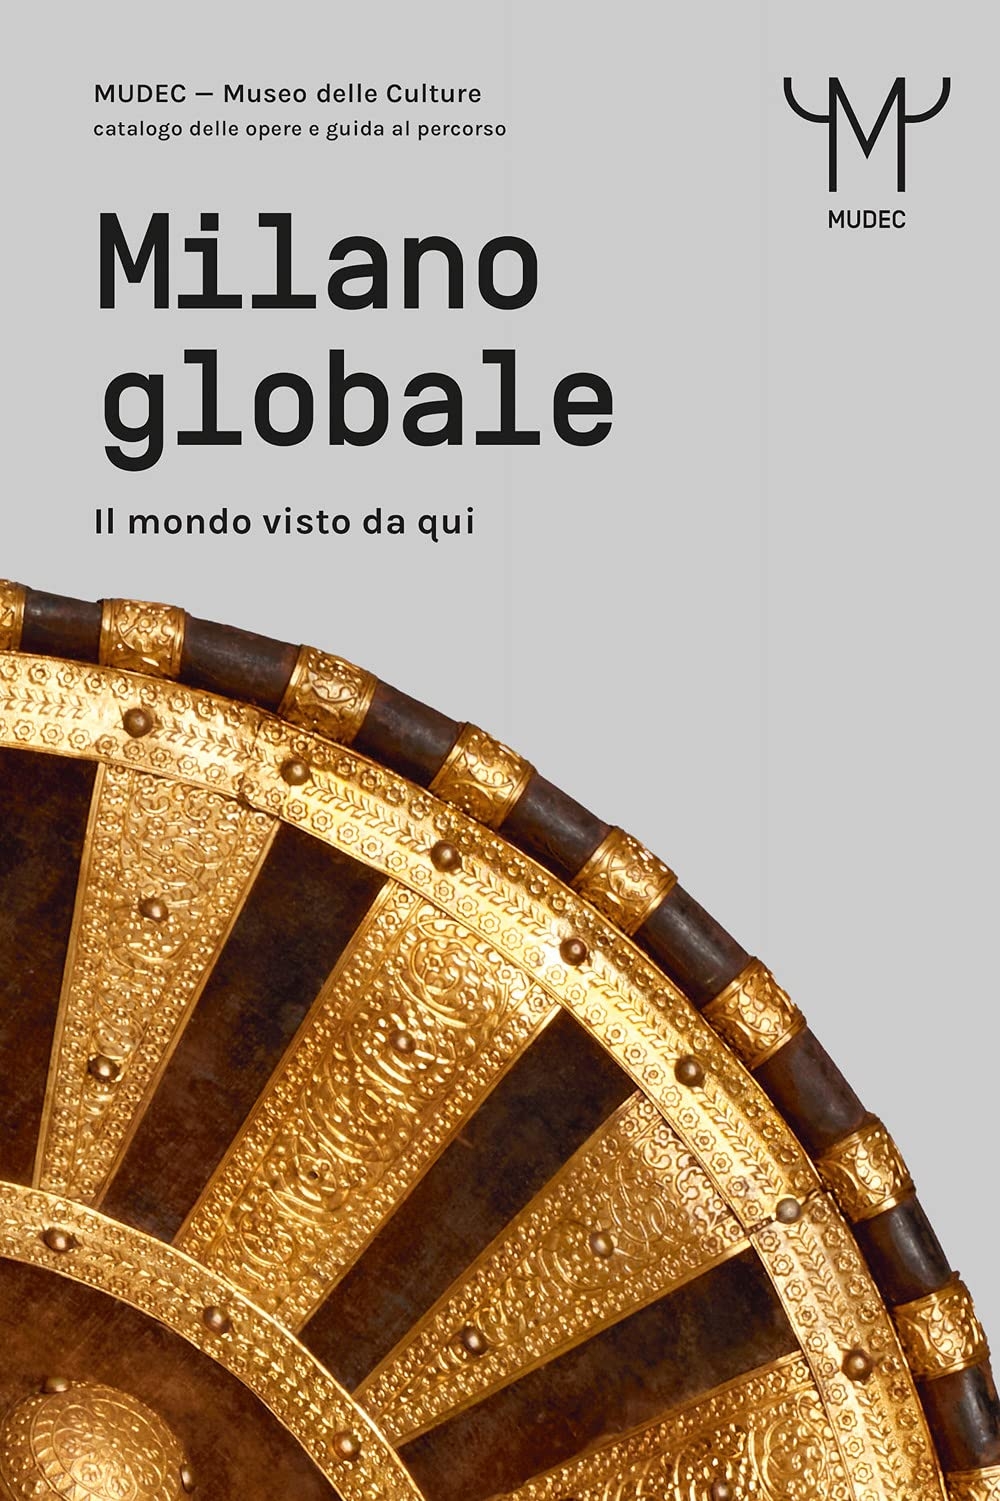 Milano globale. Il mondo visto da qui (24 ORE Cultura, Milano 2021)